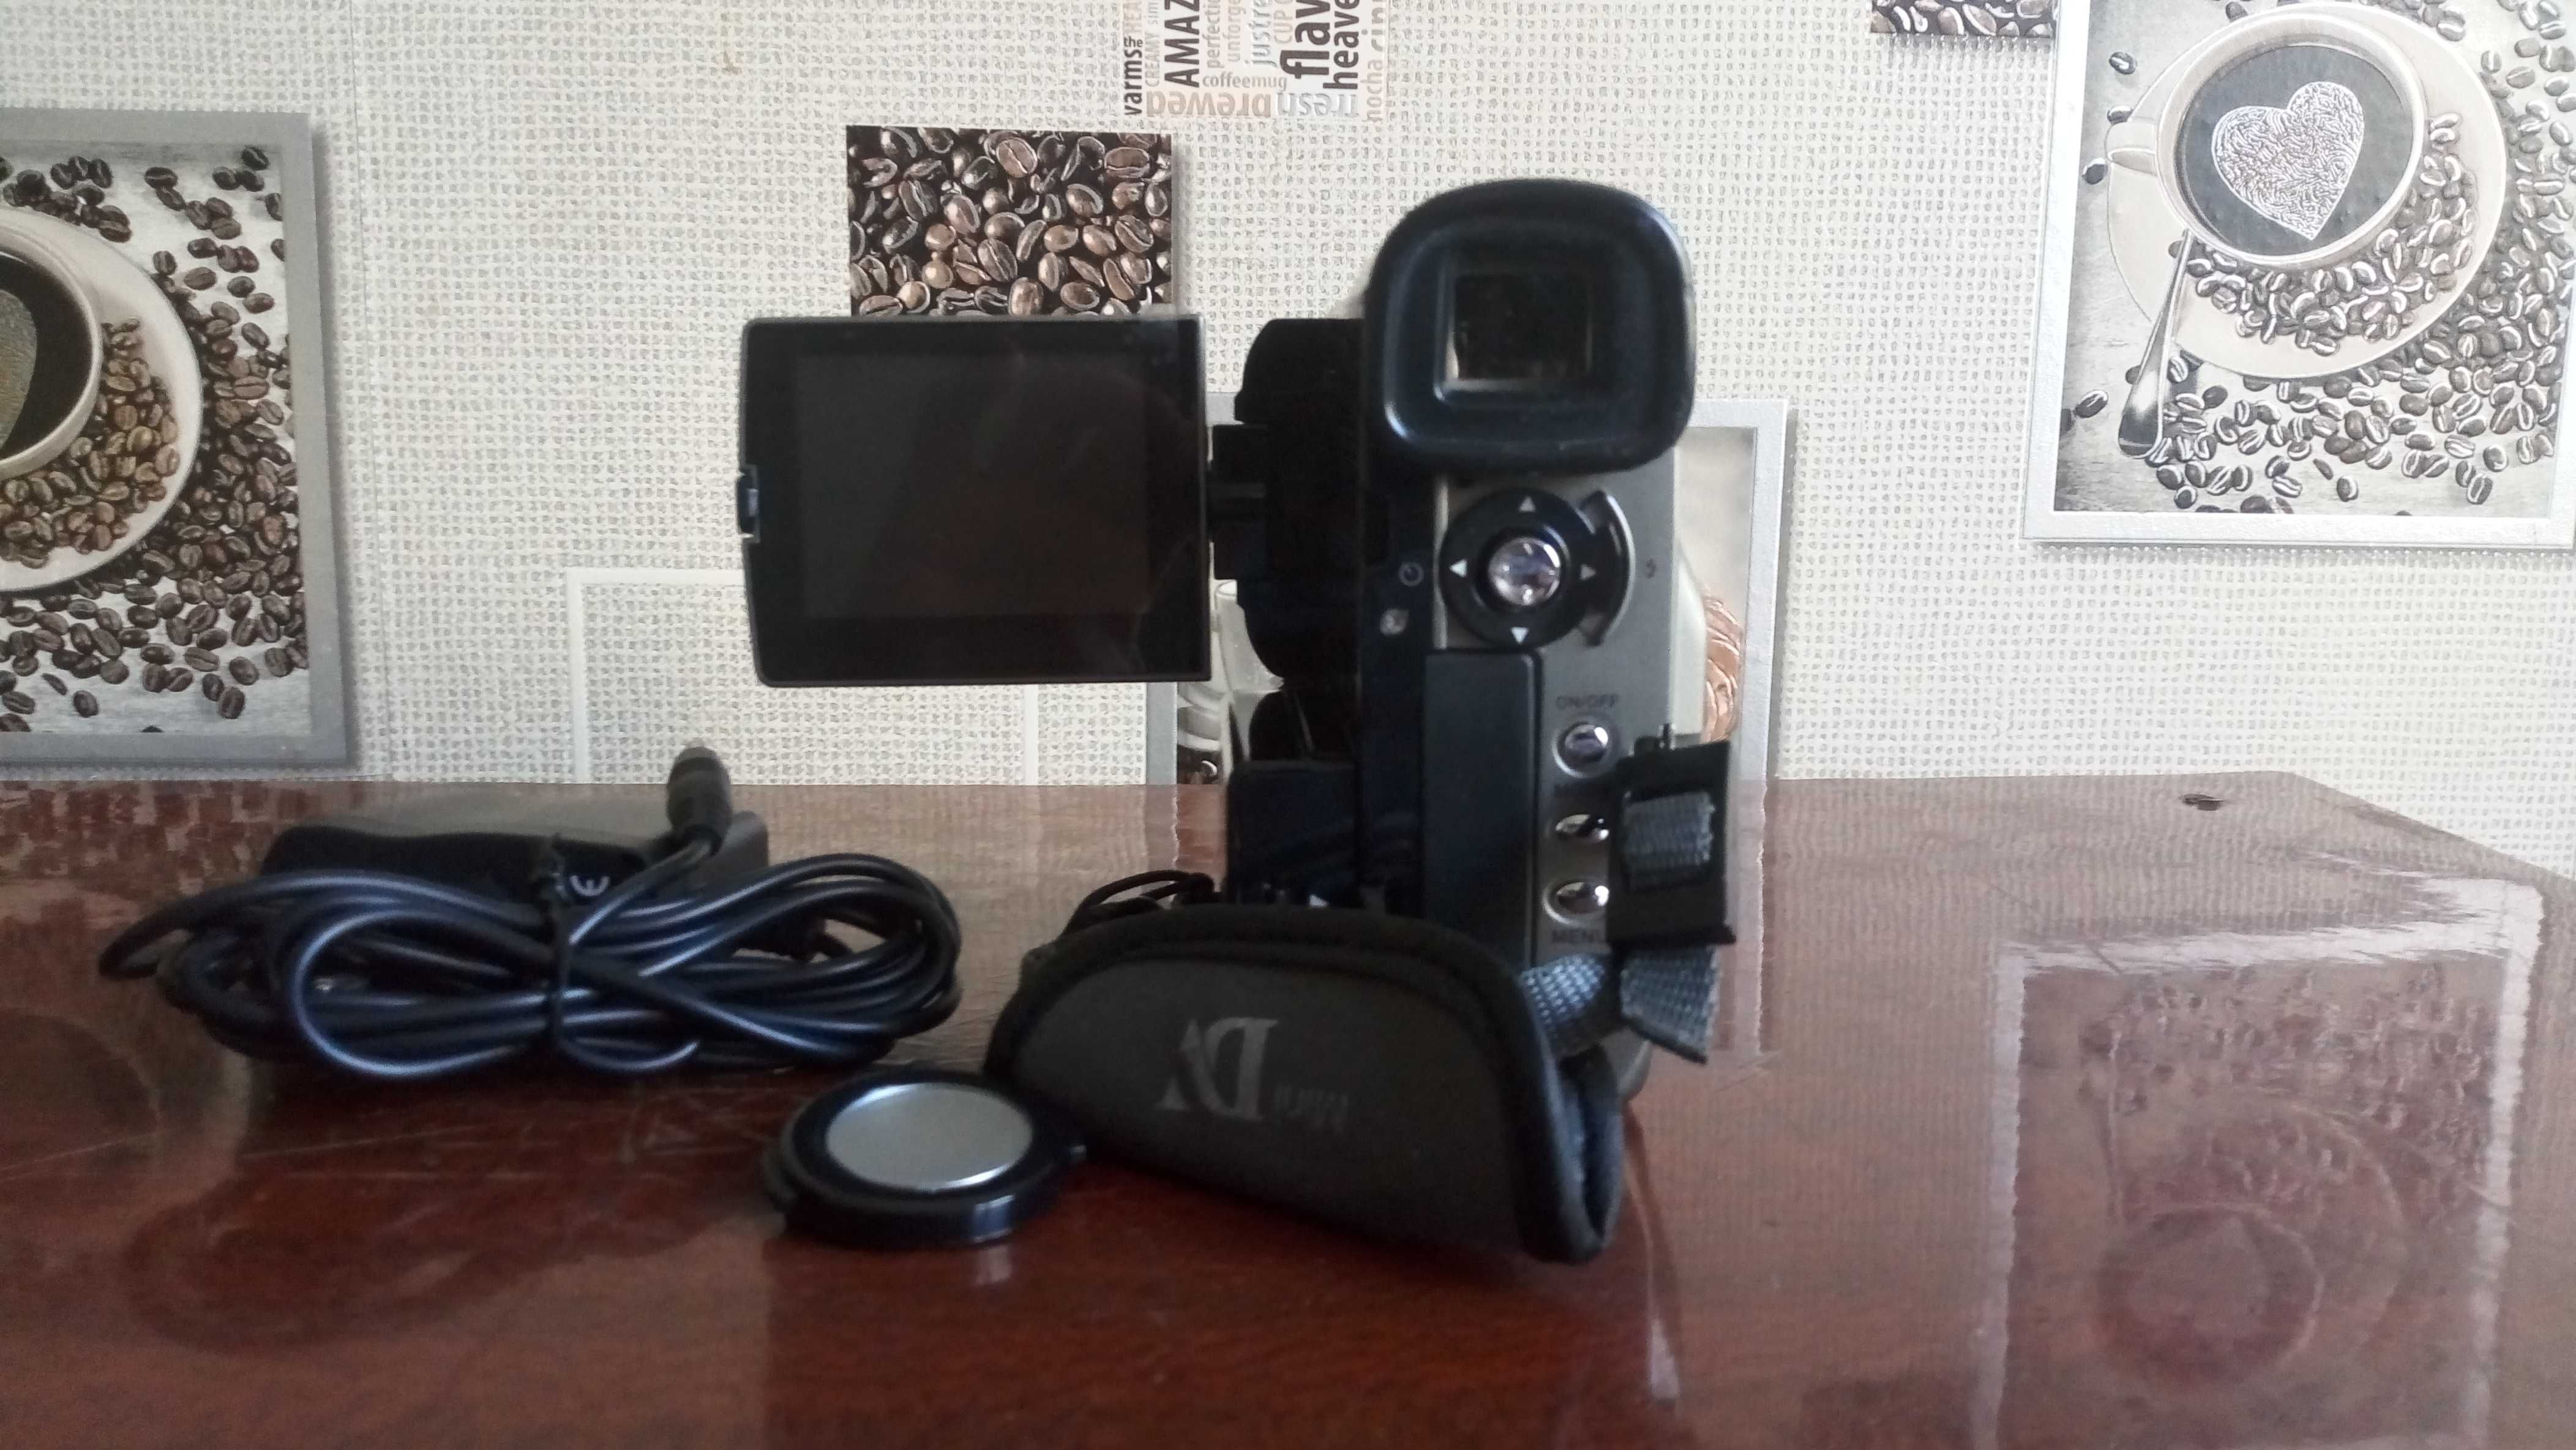 Видеокамеру SONY DV9F - цифровая видеокамера в упаковке